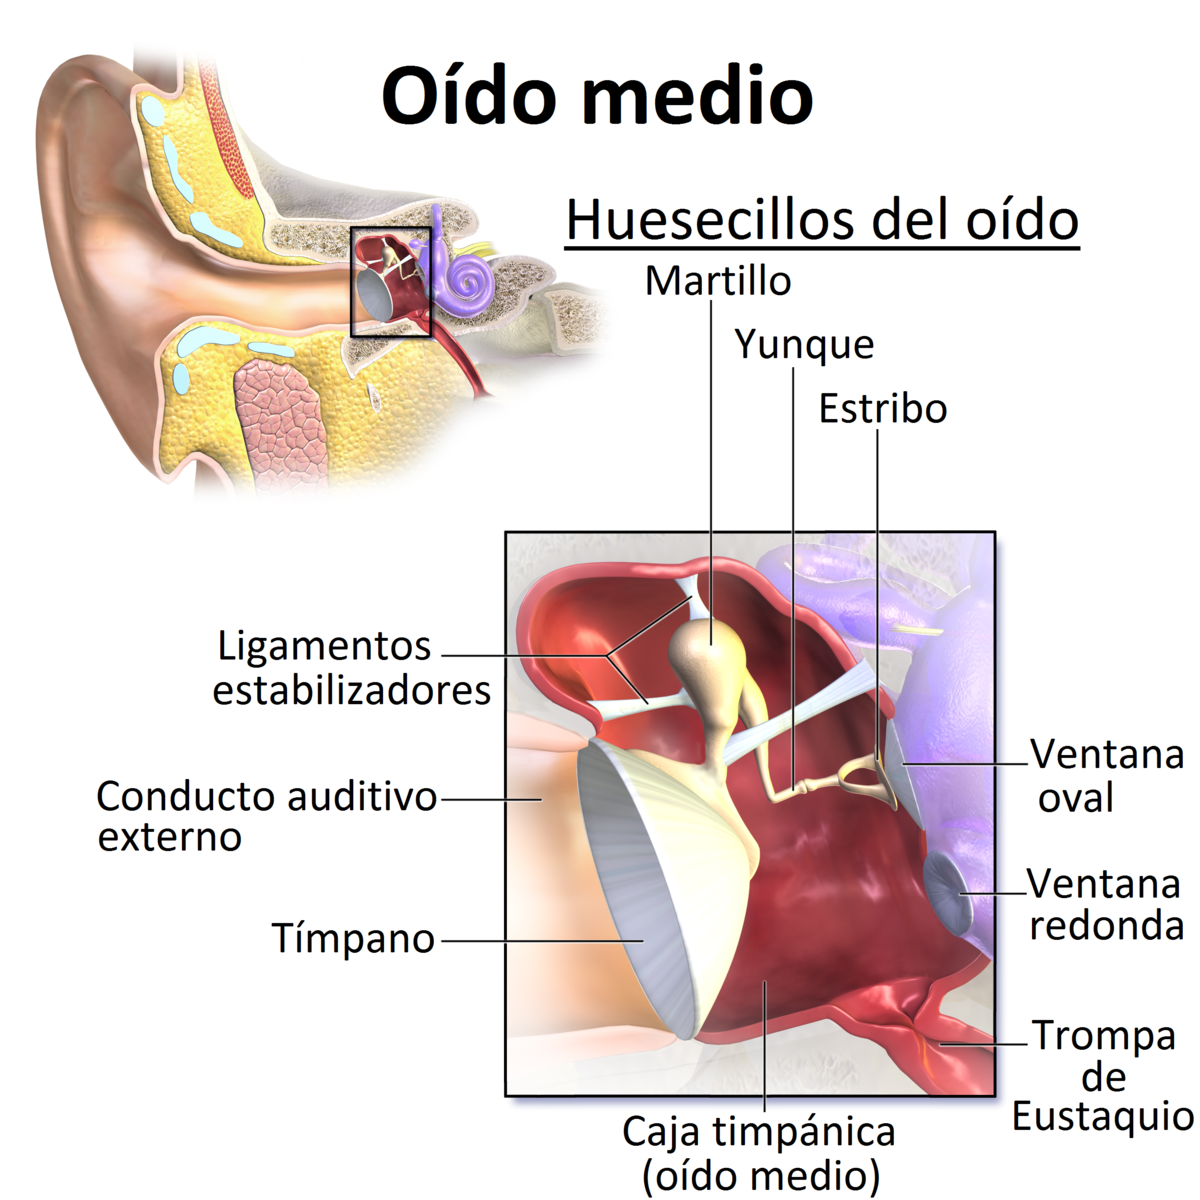 Chicle neumonía Usual Oído medio - Wikipedia, la enciclopedia libre